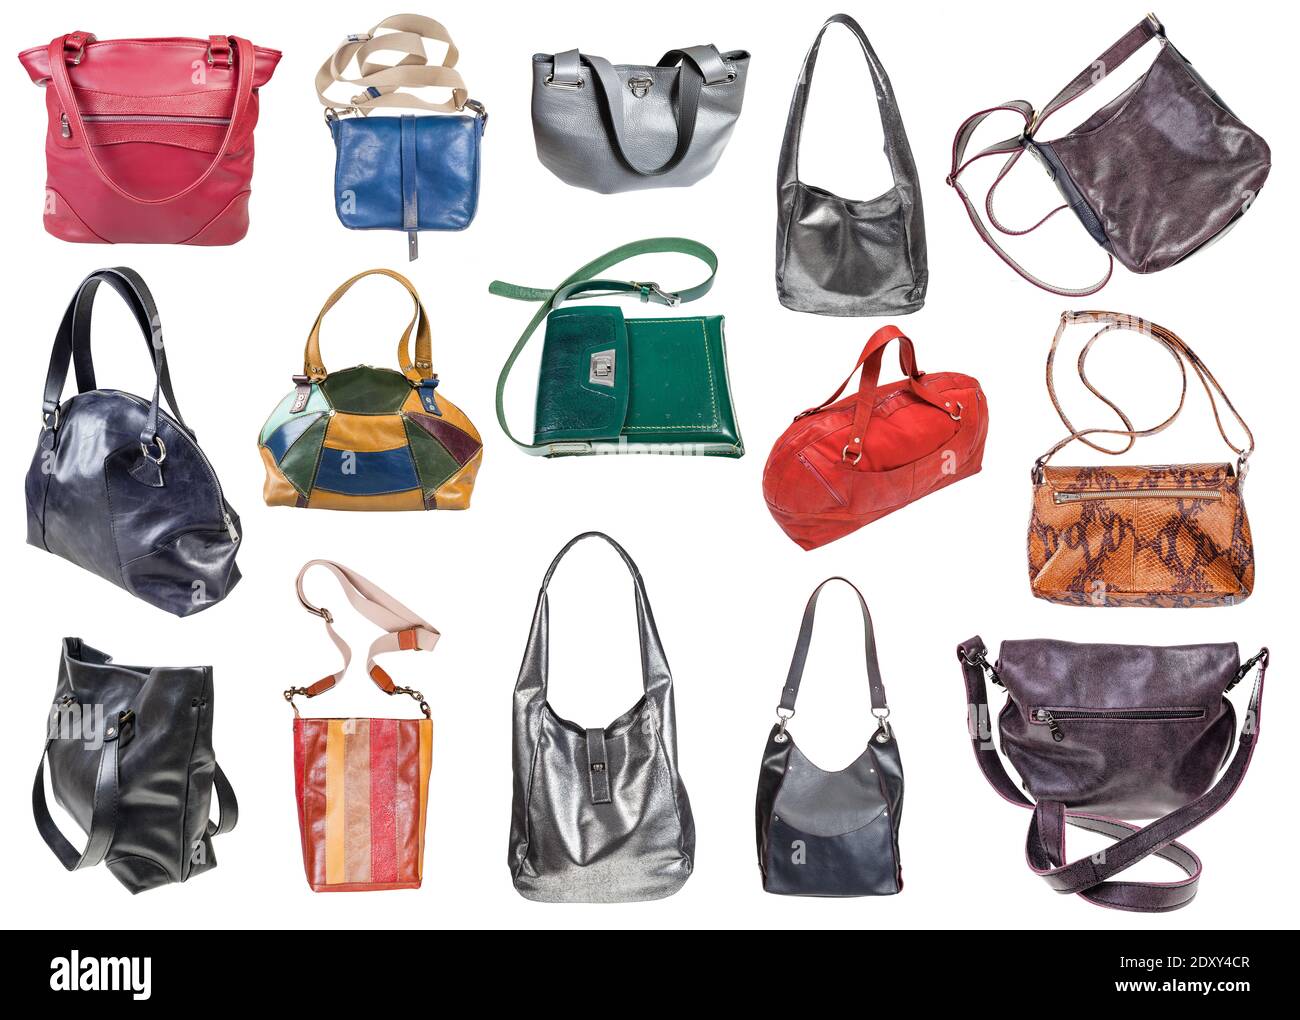 Buy Angel Women Black Hand-held Bag Black Online @ Best Price in India |  Flipkart.com